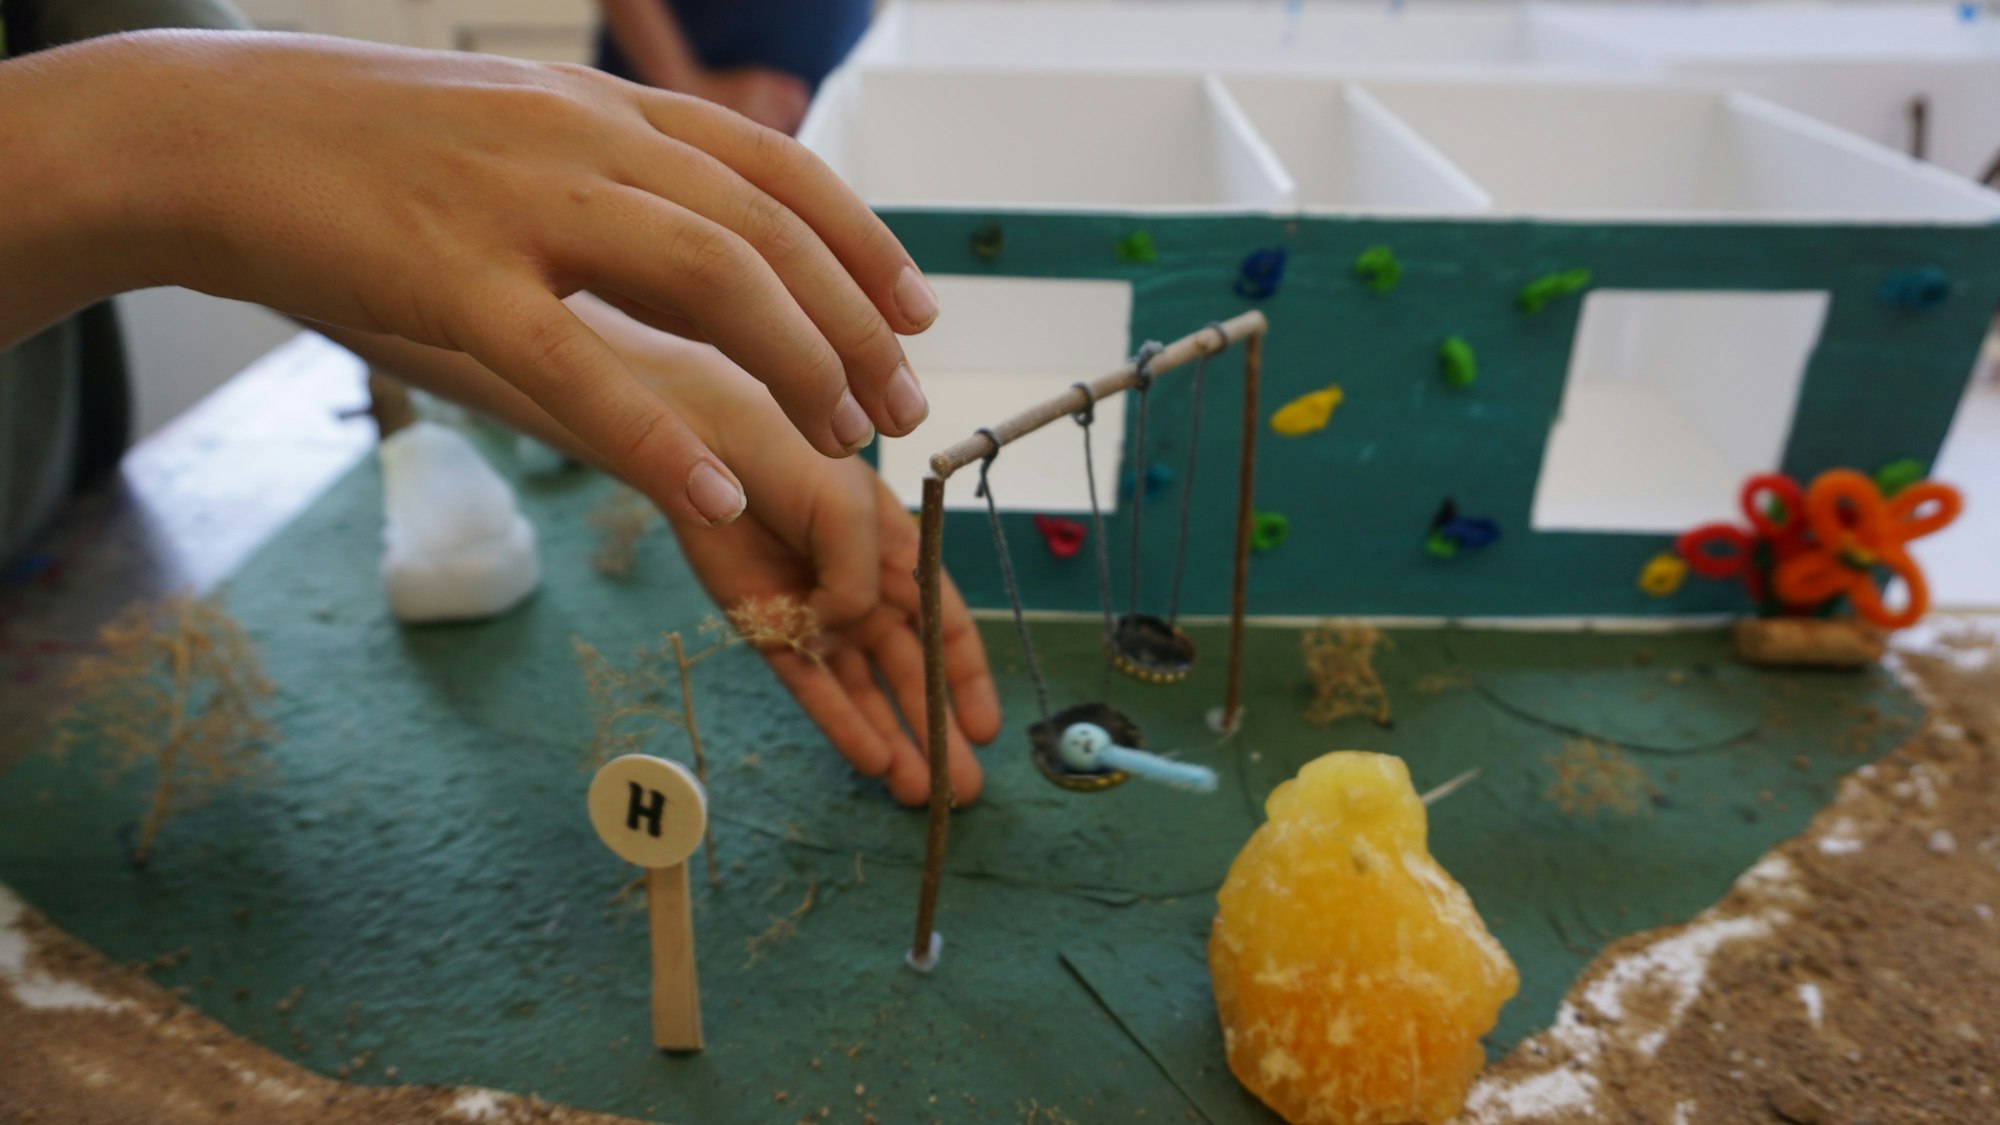 Das Modell der Traumschule haben die Schüler aus Zülpich im Kunstunterricht gebaut. Unter anderem haben sie Pfeifenreiniger verwendet.